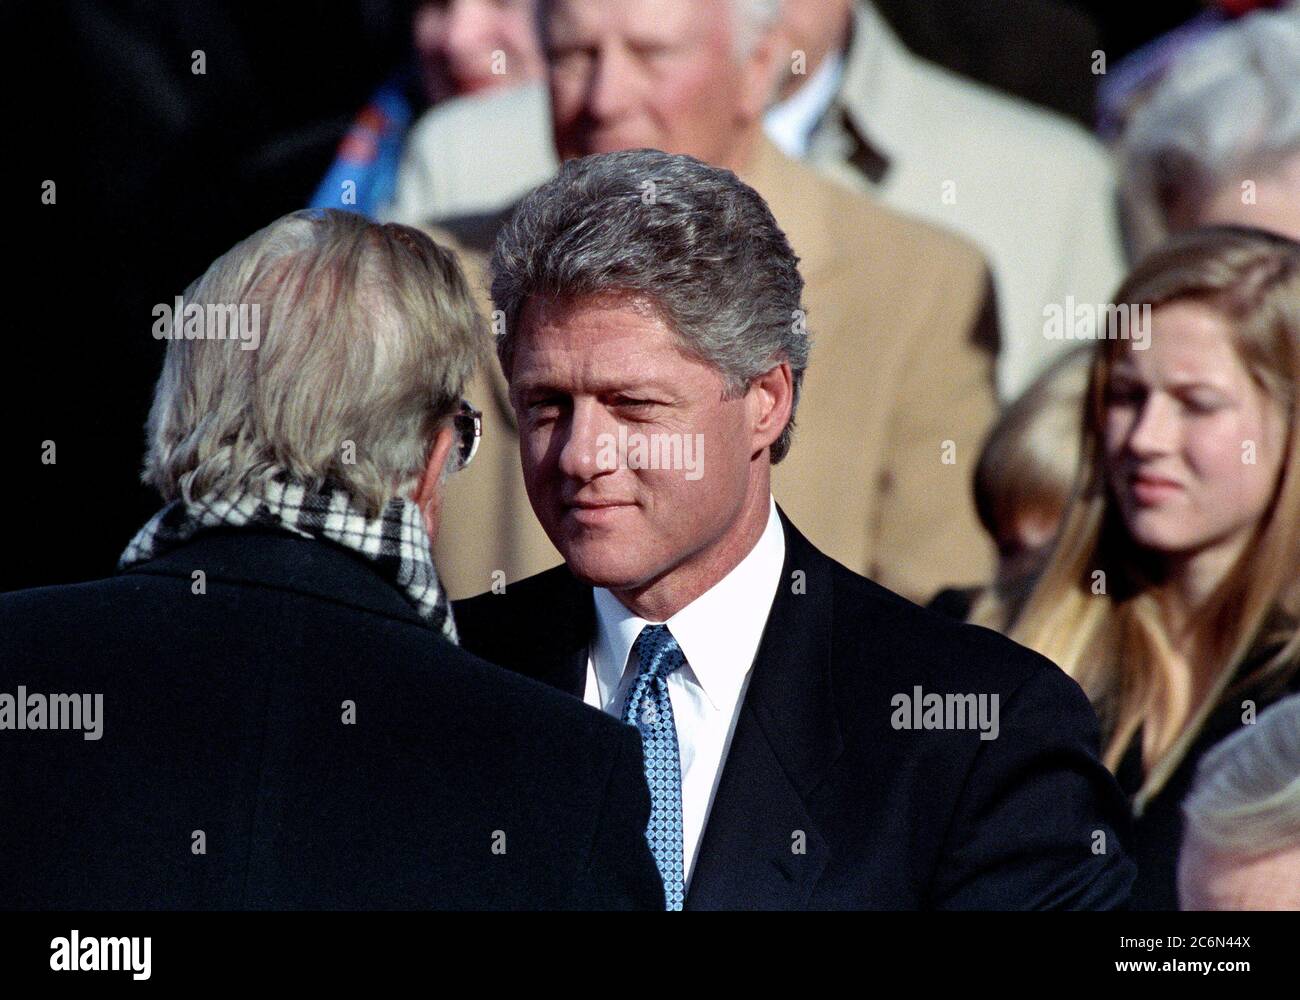 1/20/1993 Photographie du révérend Billy Graham parle au Président William Jefferson Clinton au cours de la cérémonie d'investiture Présidentielle 1993 Banque D'Images